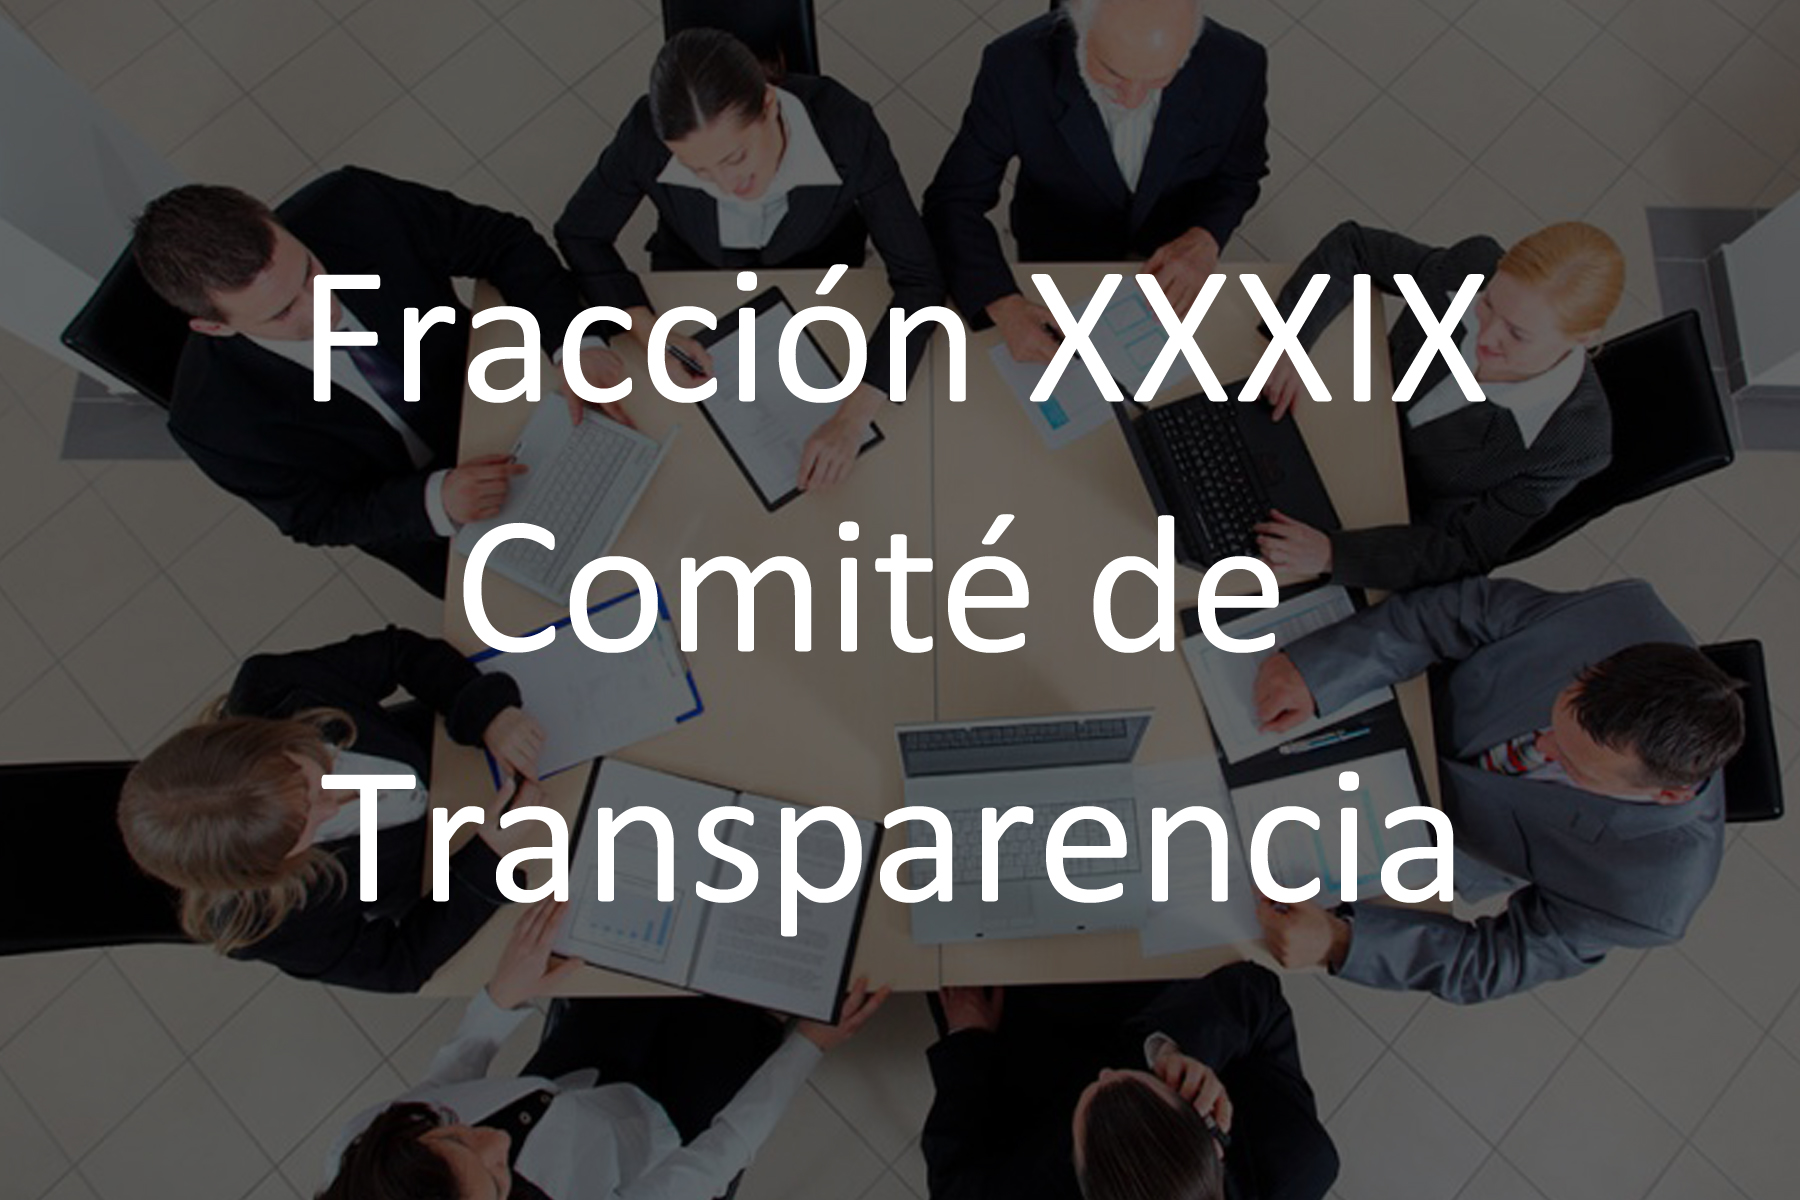 Fracción XXXIX Comité de Transparencia